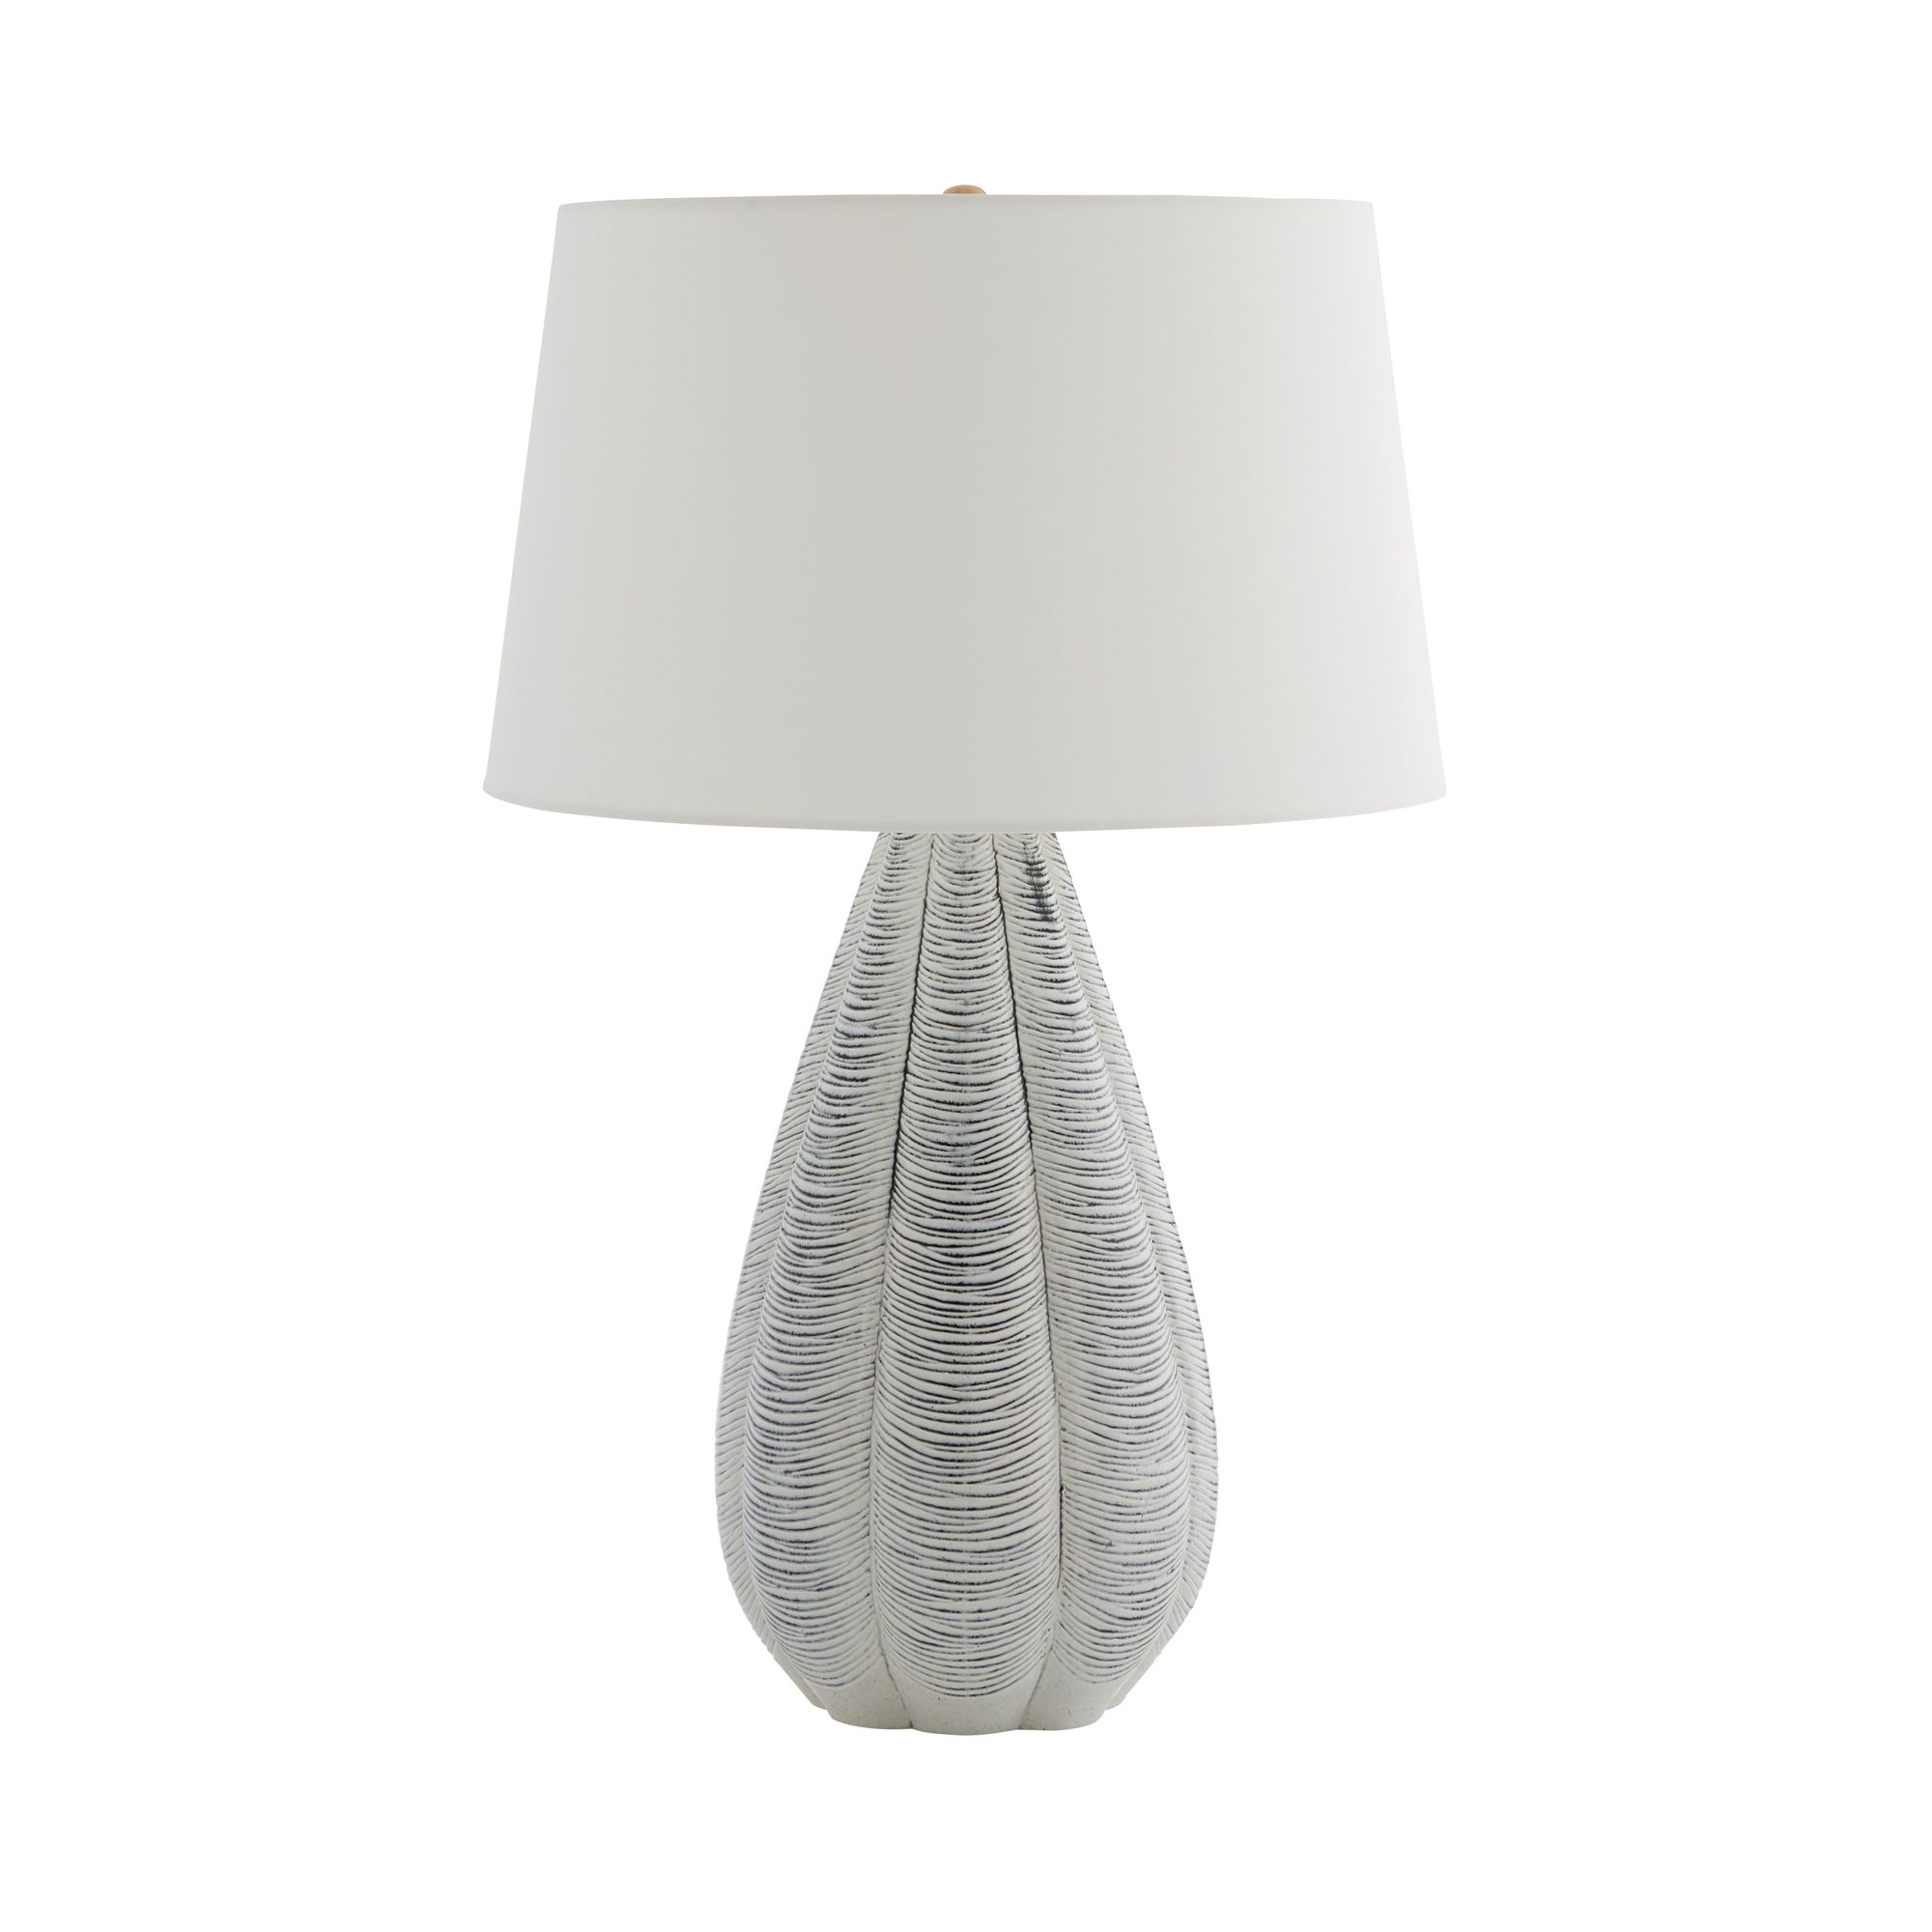 Купить Настольная лампа Milani Lamp в интернет-магазине roooms.ru